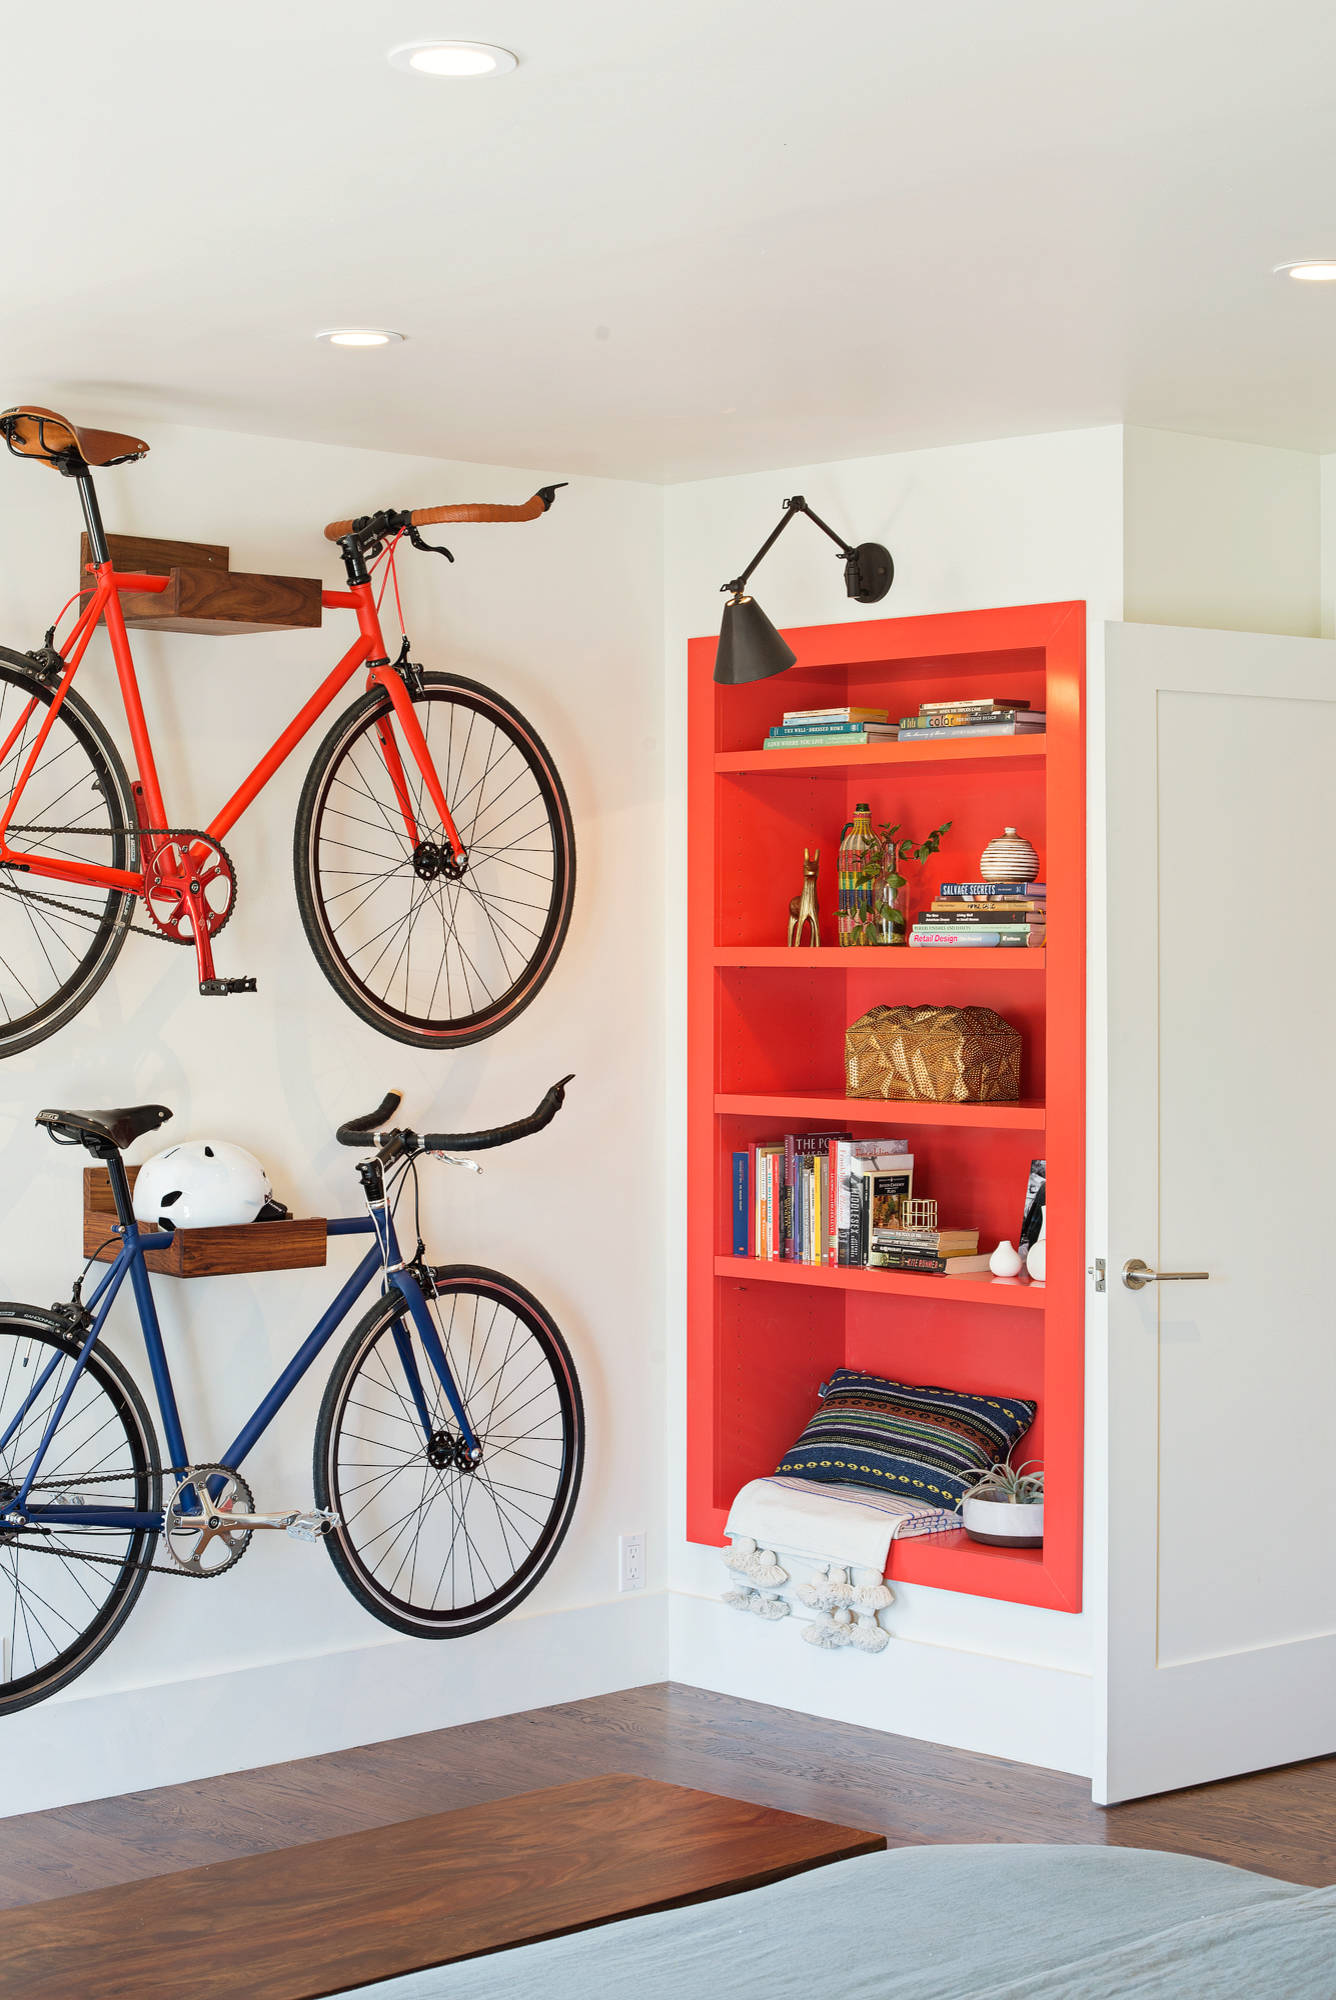 Можно ставить велосипед на. Велосипед в интерьере. Место для хранения велосипеда. Компактное хранение велосипедов. Велосипед на стене в интерьере.